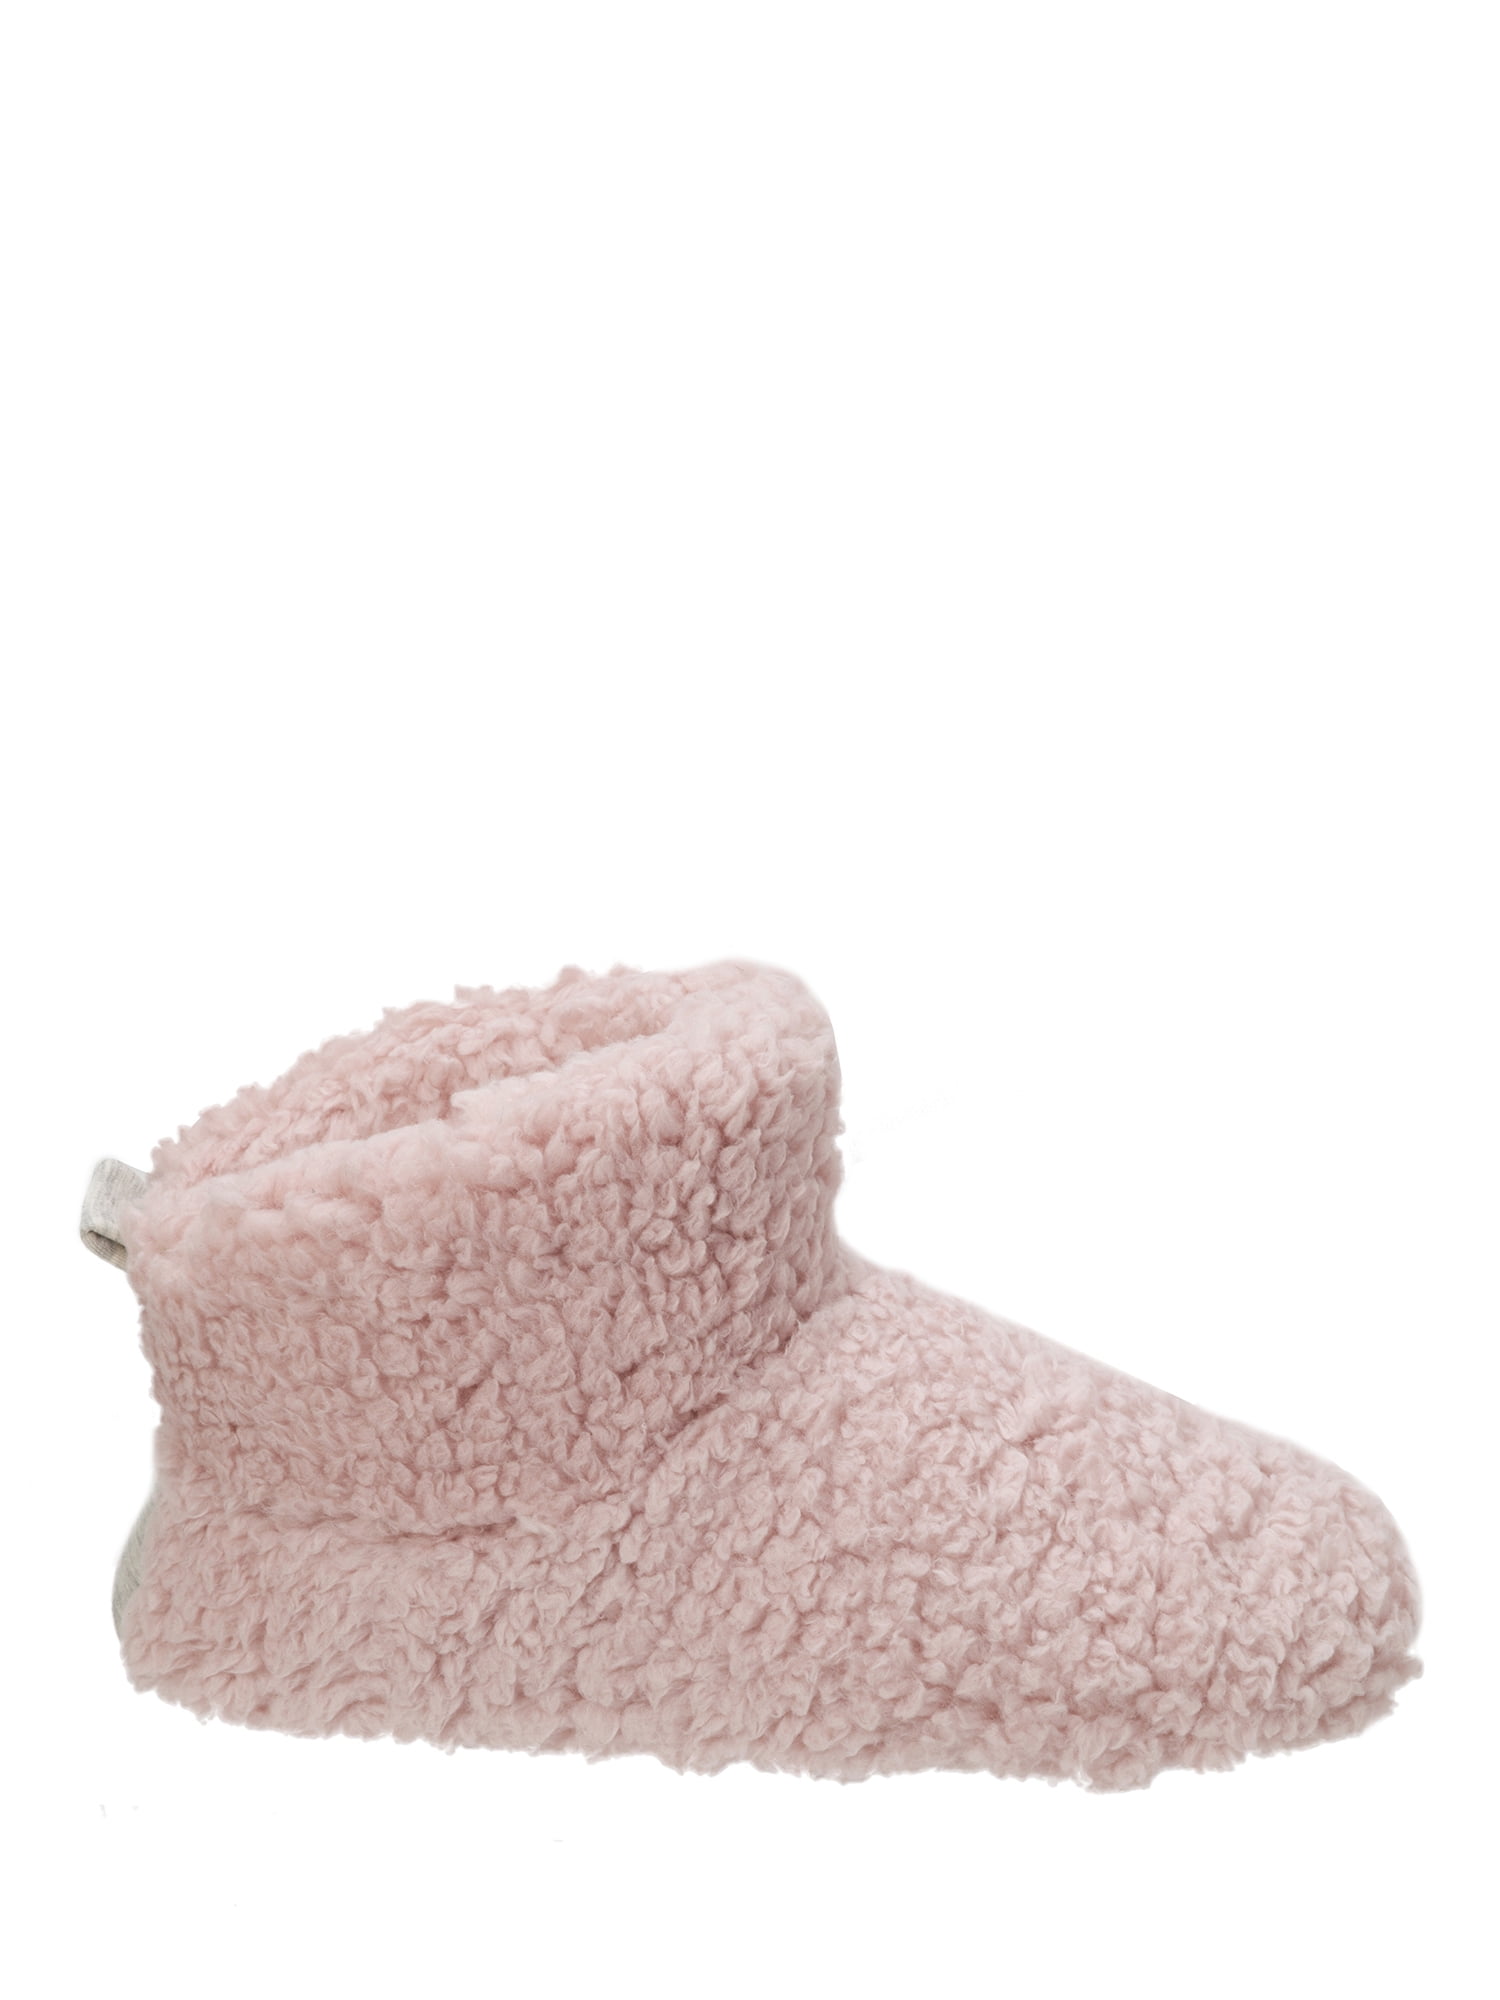 Dearfoams Sleet Women's Fluffy Pile Memory Foam Bootie Slippers 